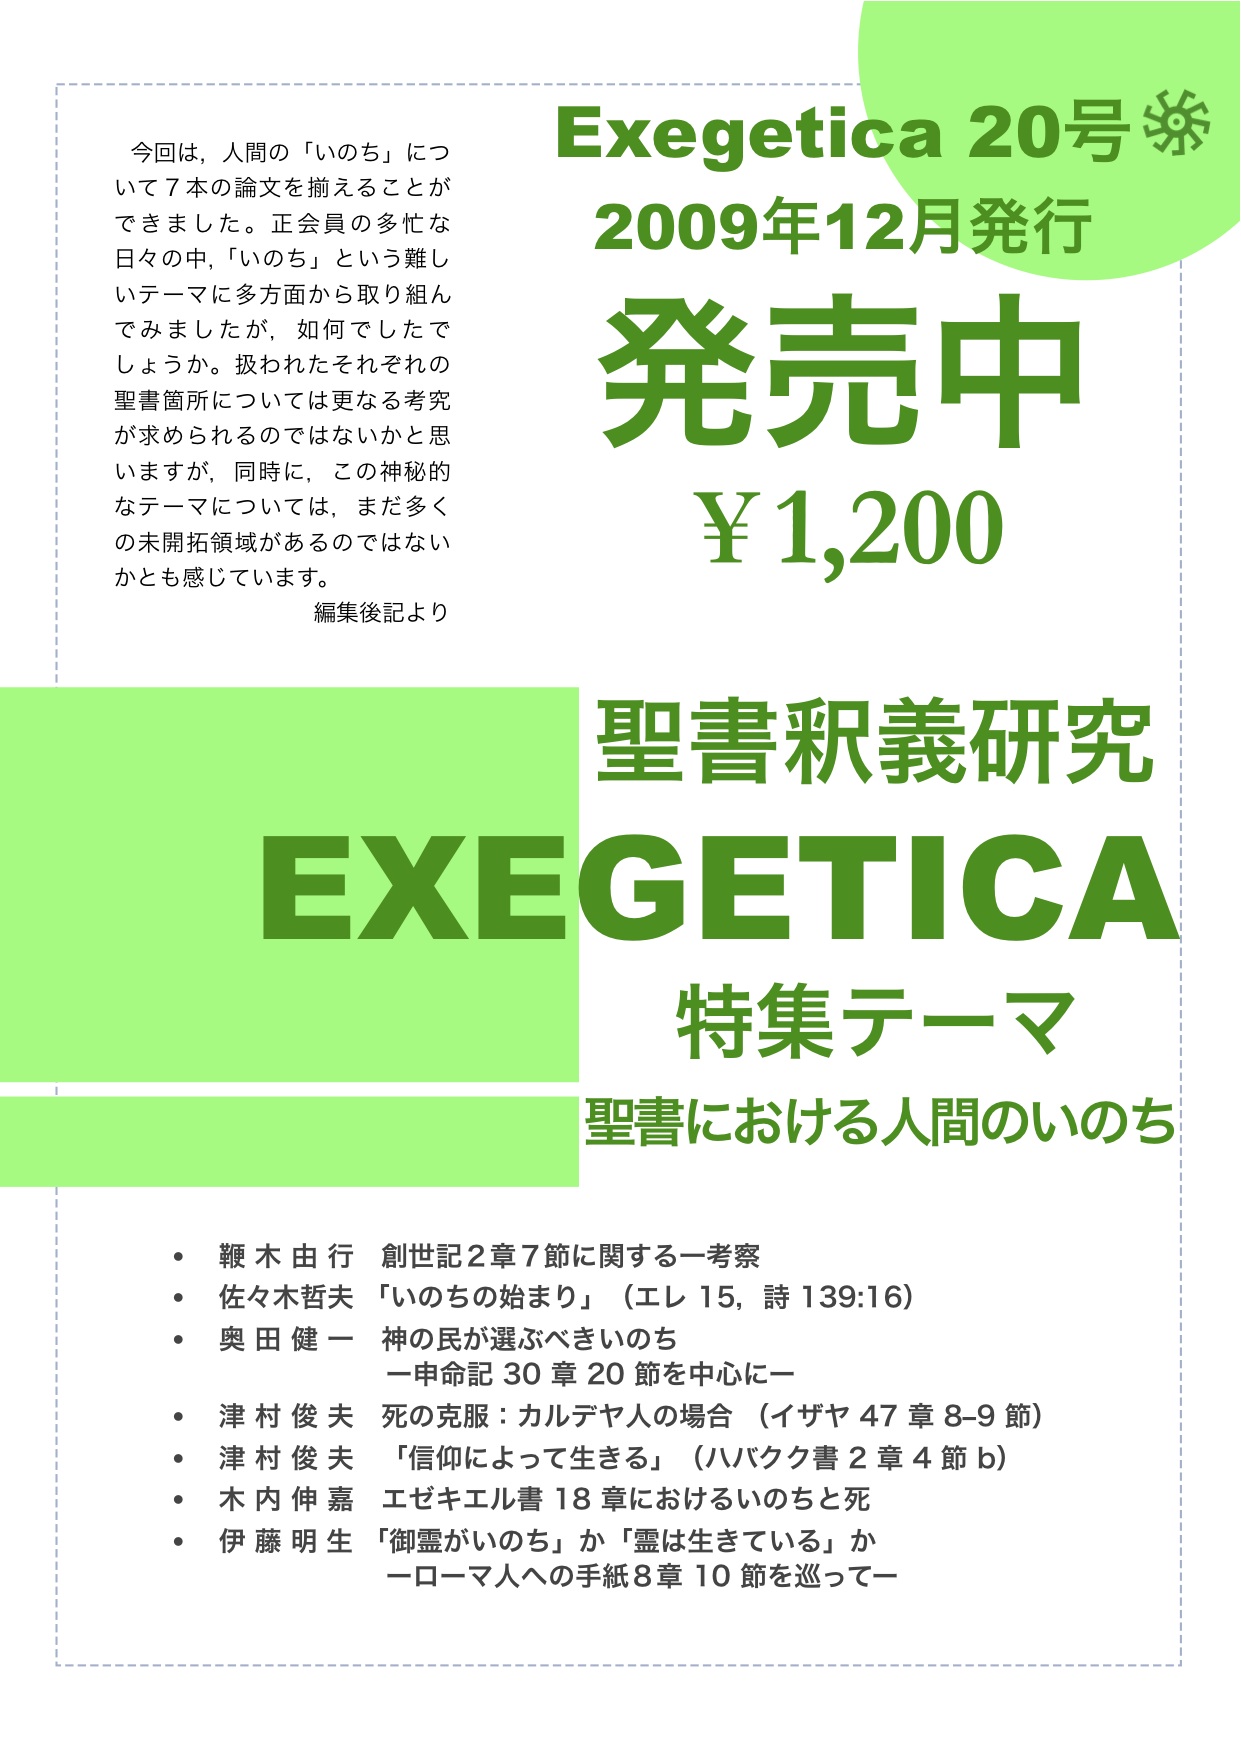 『EXEGETICA』(聖書釈義研究会) 20(2009)